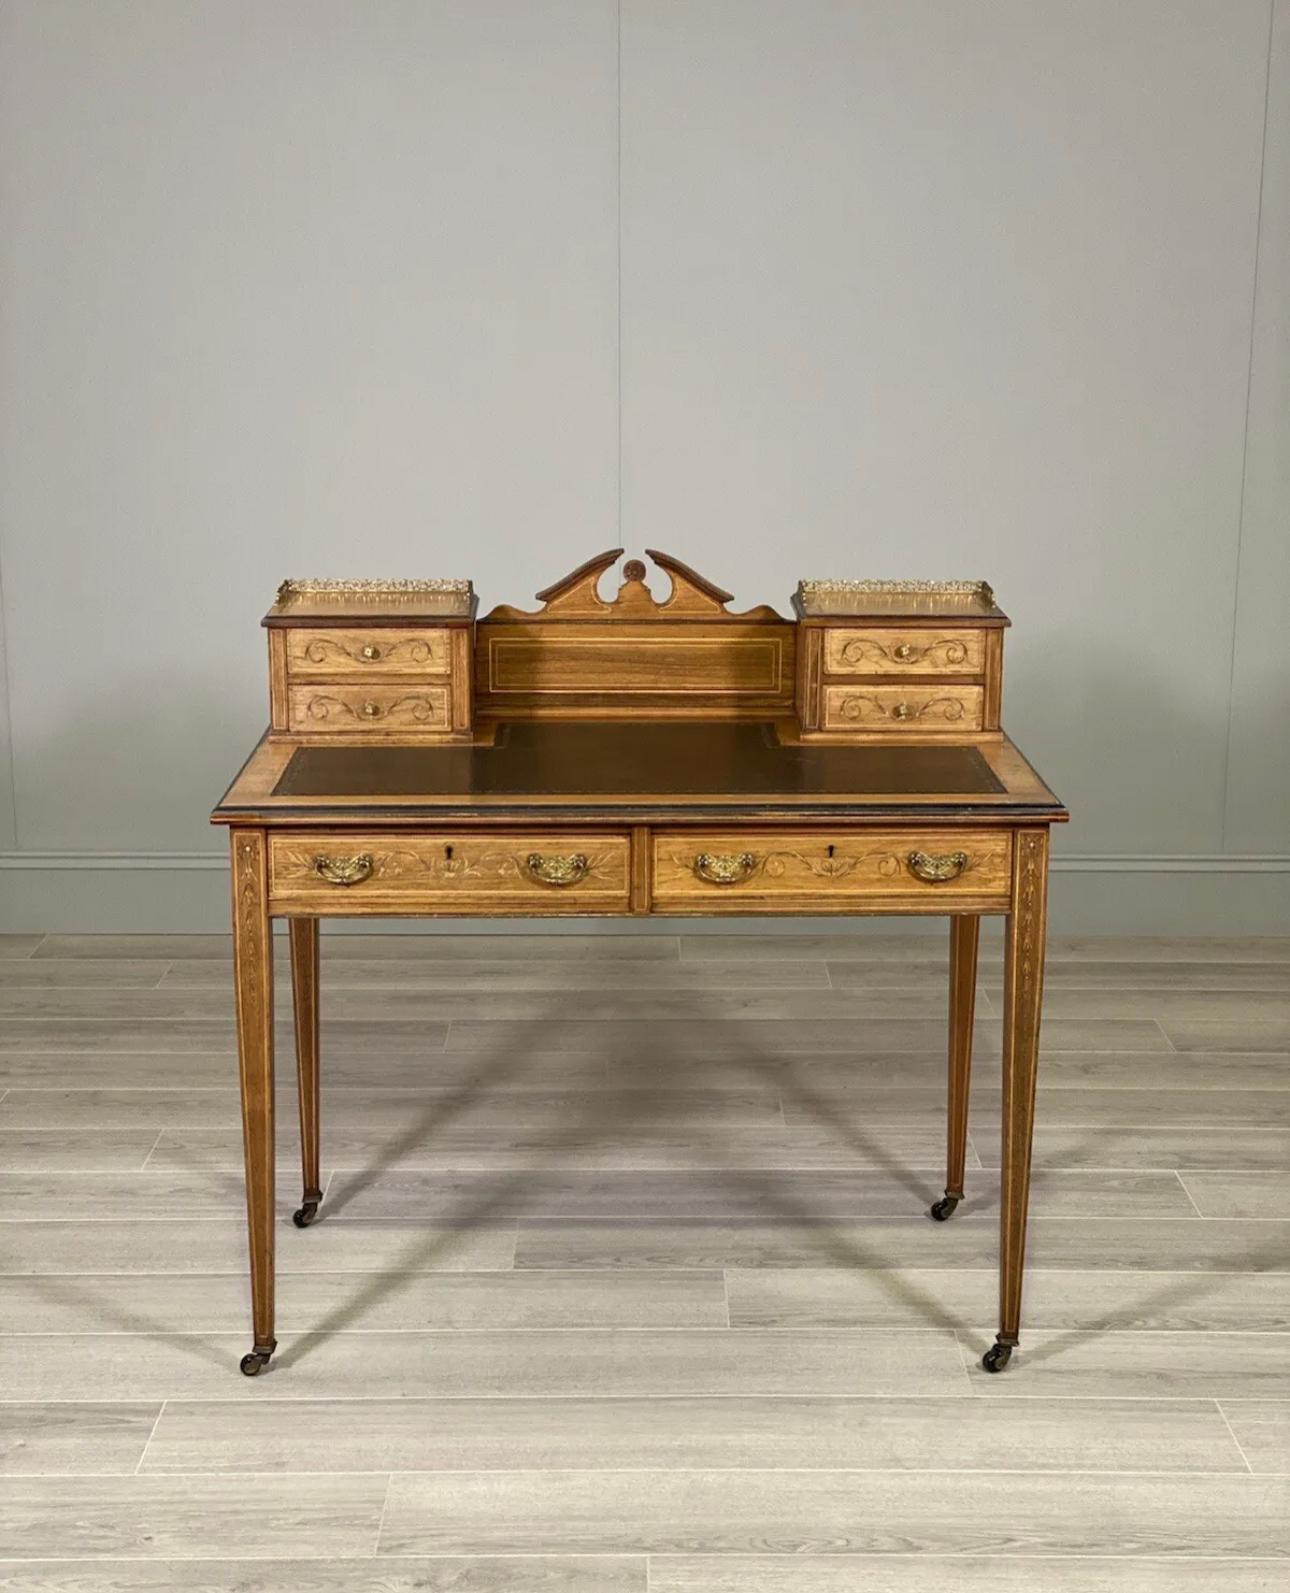 Ein hochwertiger Schreibtisch des berühmten Möbelherstellers Maple & Co. Der Schreibtisch hat dekorativ eingelegte Palisanderfurniere, vier Schreibtischschubladen mit Messinggalerien, zwei große Schubladen, eine originale Lederschreibfläche und